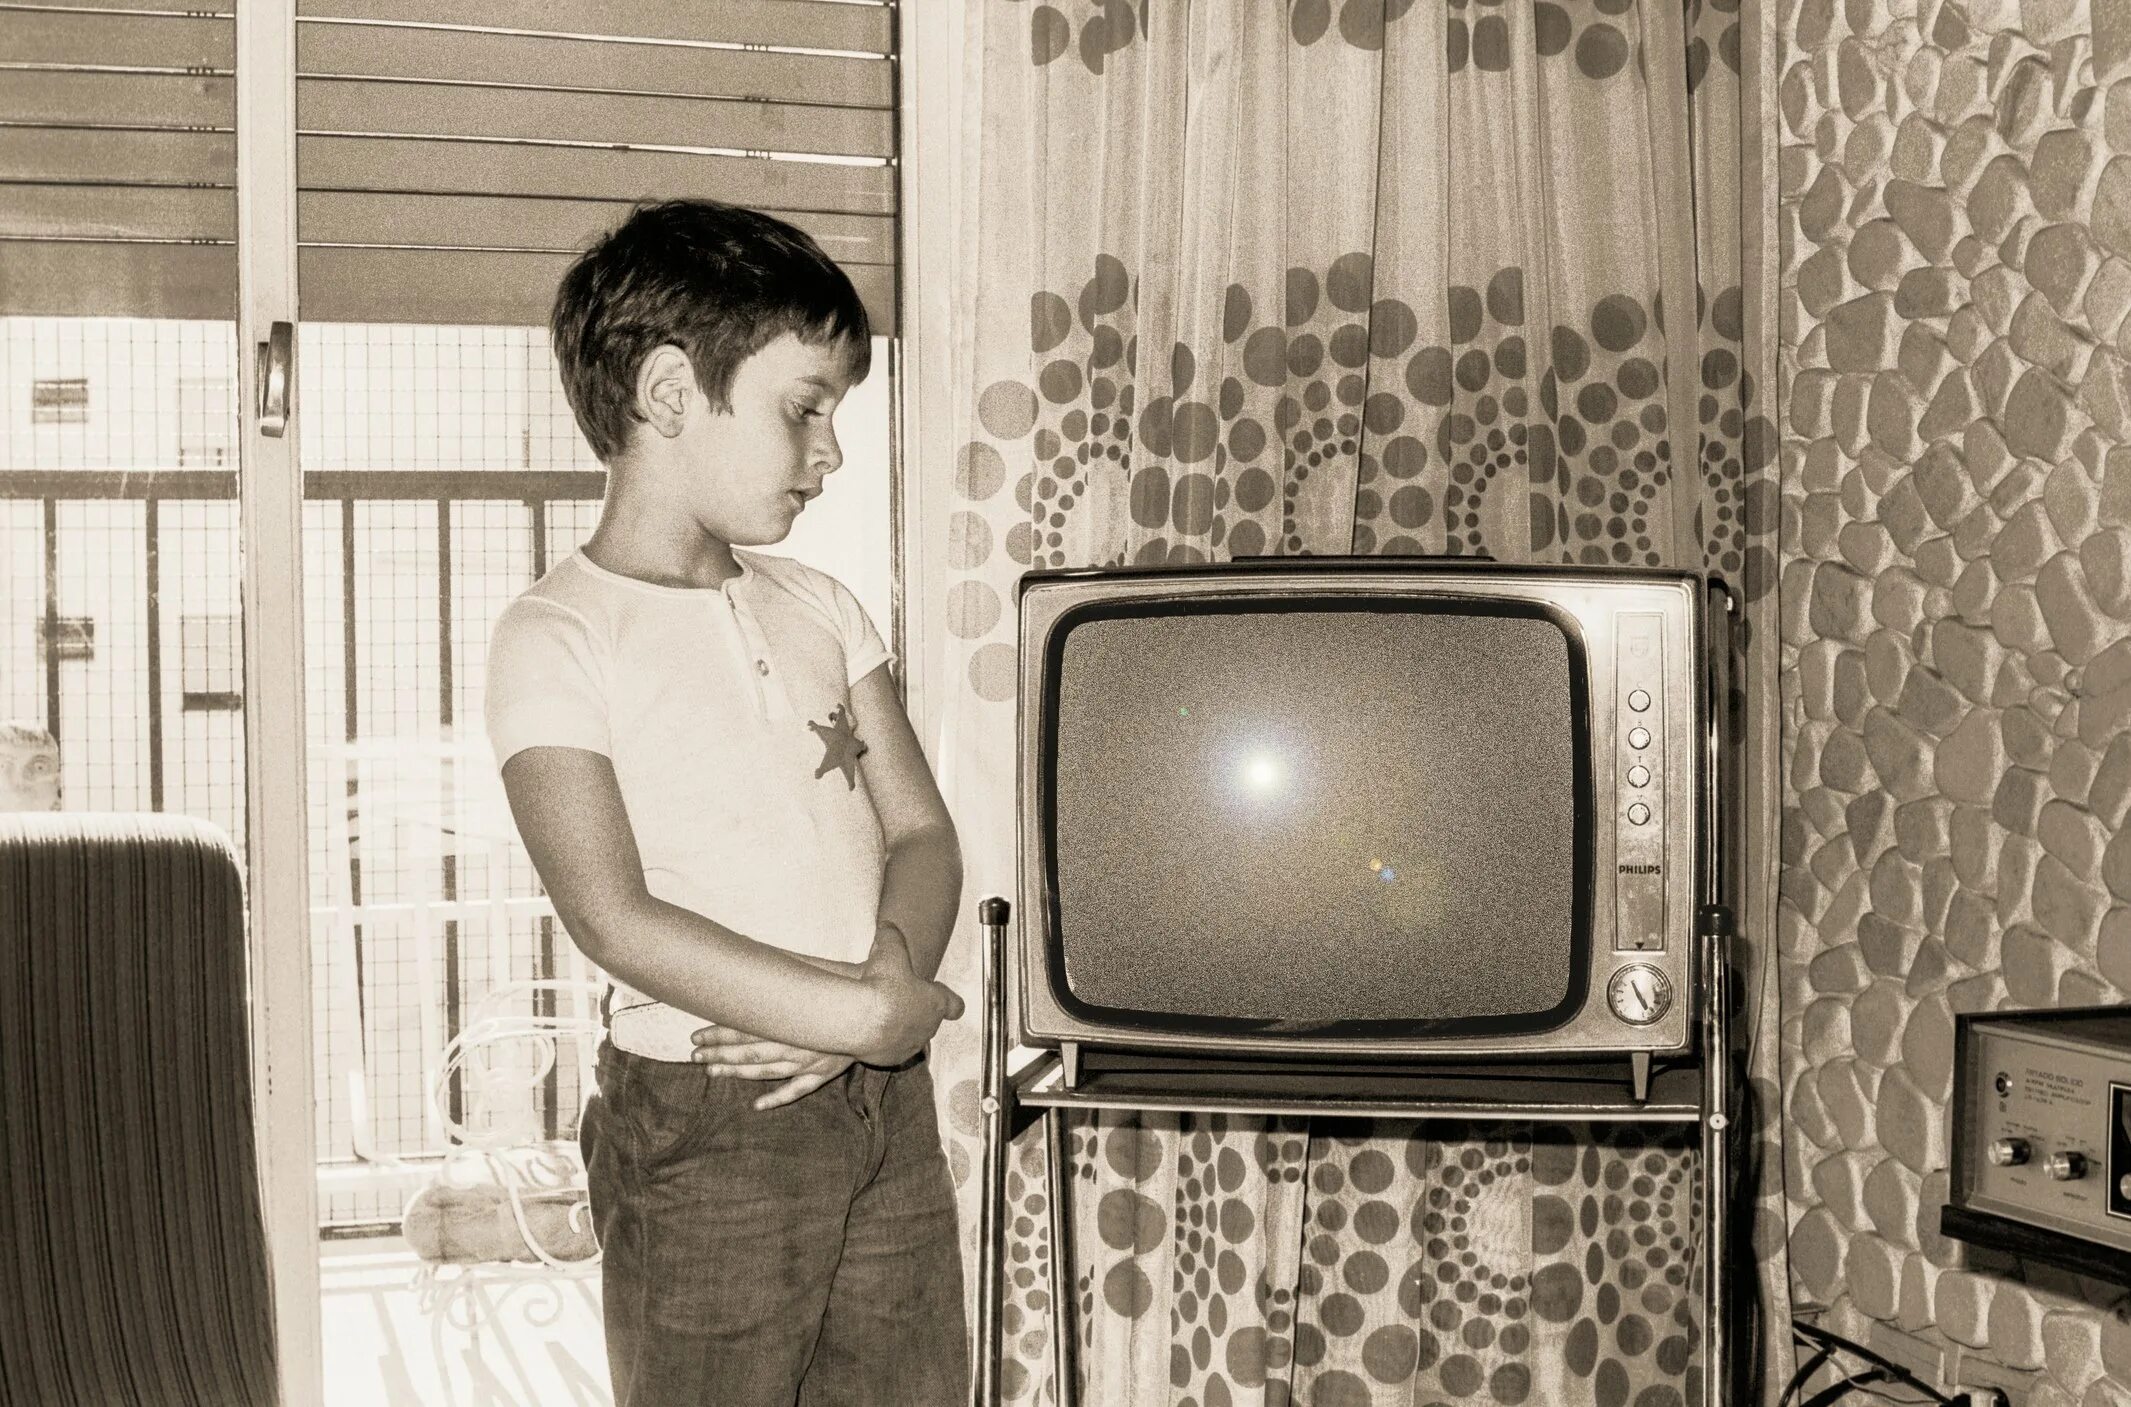 Ламповый телевизор сигнал 2. Мальчик у телевизора. Мальчик старый телевизор. Транзисторный телевизор.